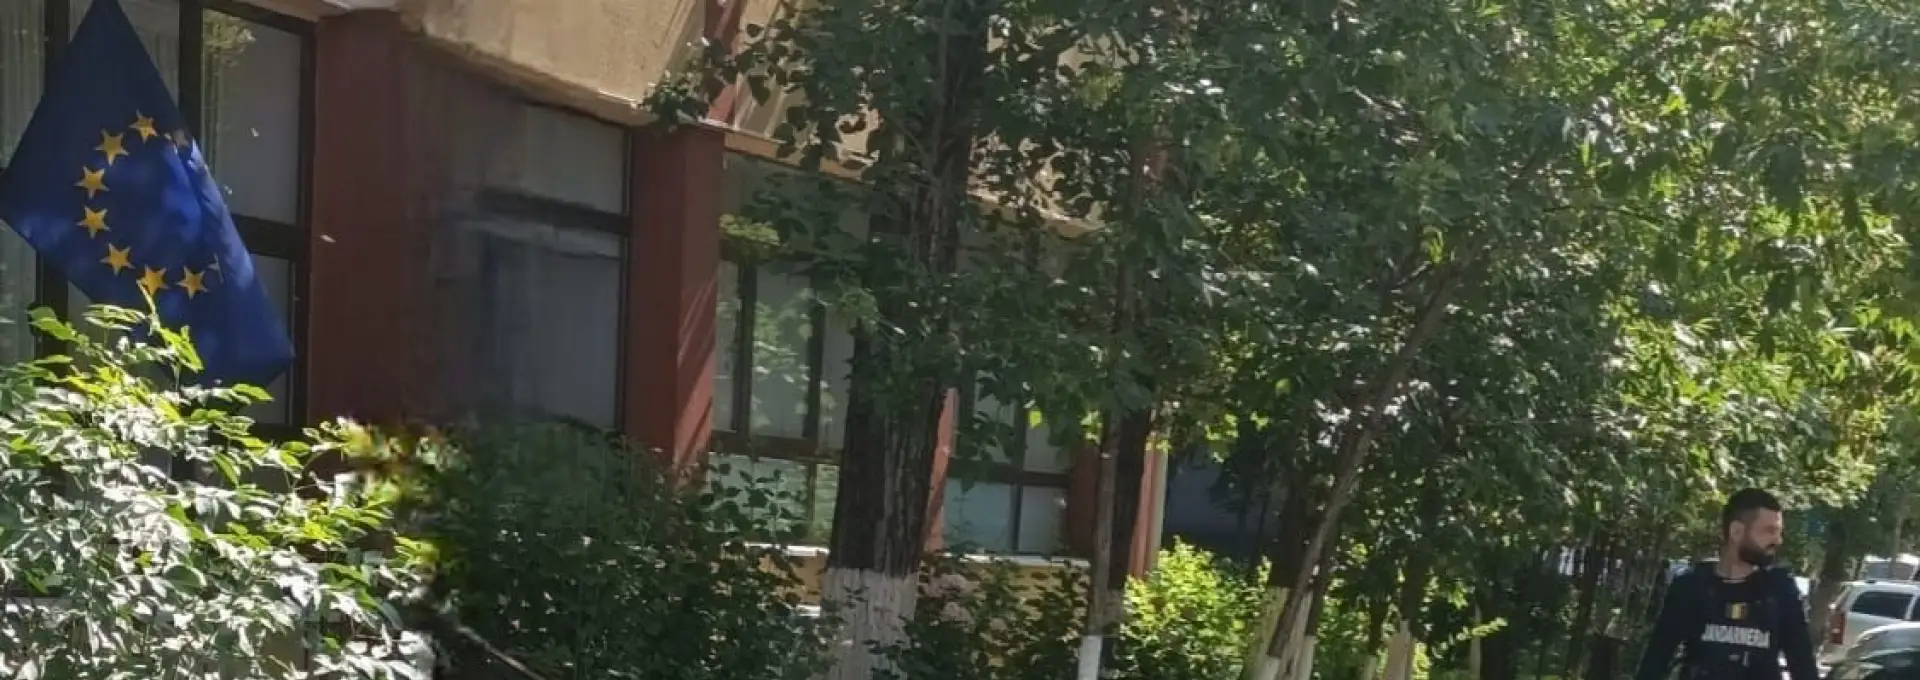 Foto Roi de albine pe stradă şi şarpe de 1,5 metri într-o gospodărie. Jandarmii olteni au intervenit (VIDEO)